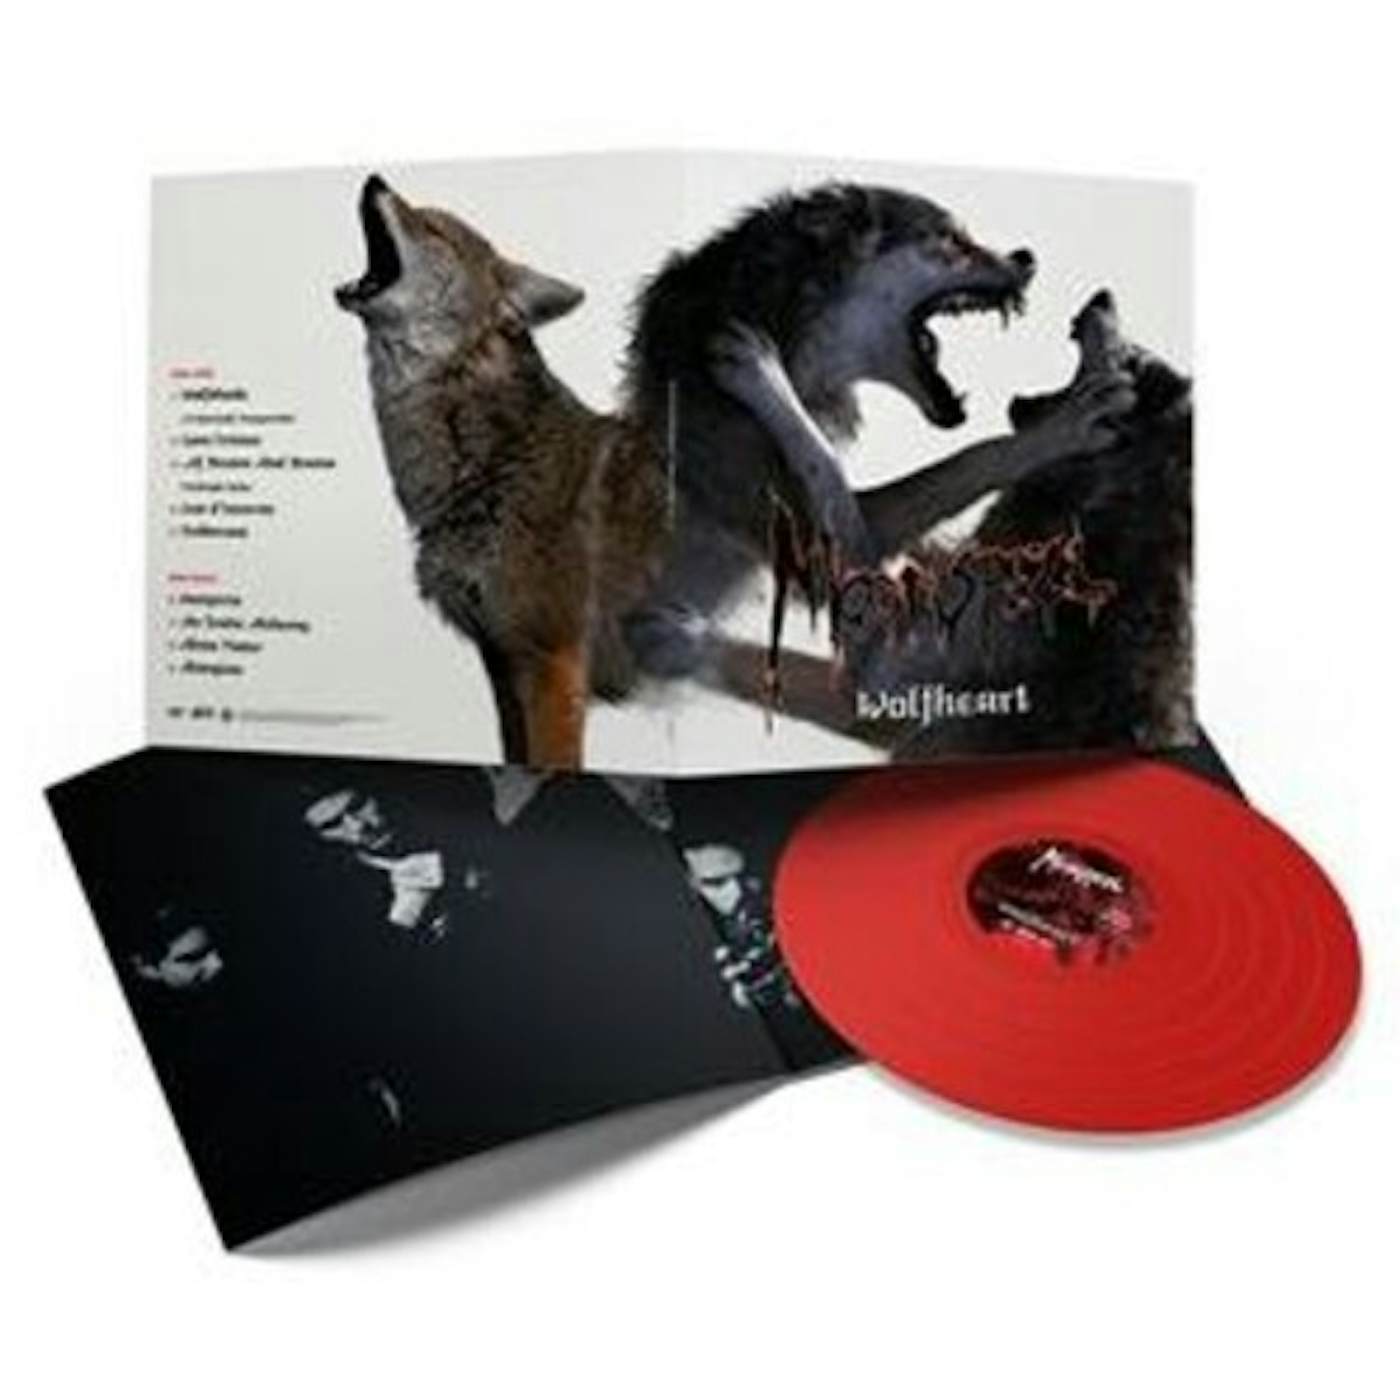 Moonspell Wolfheart Vinyl Record